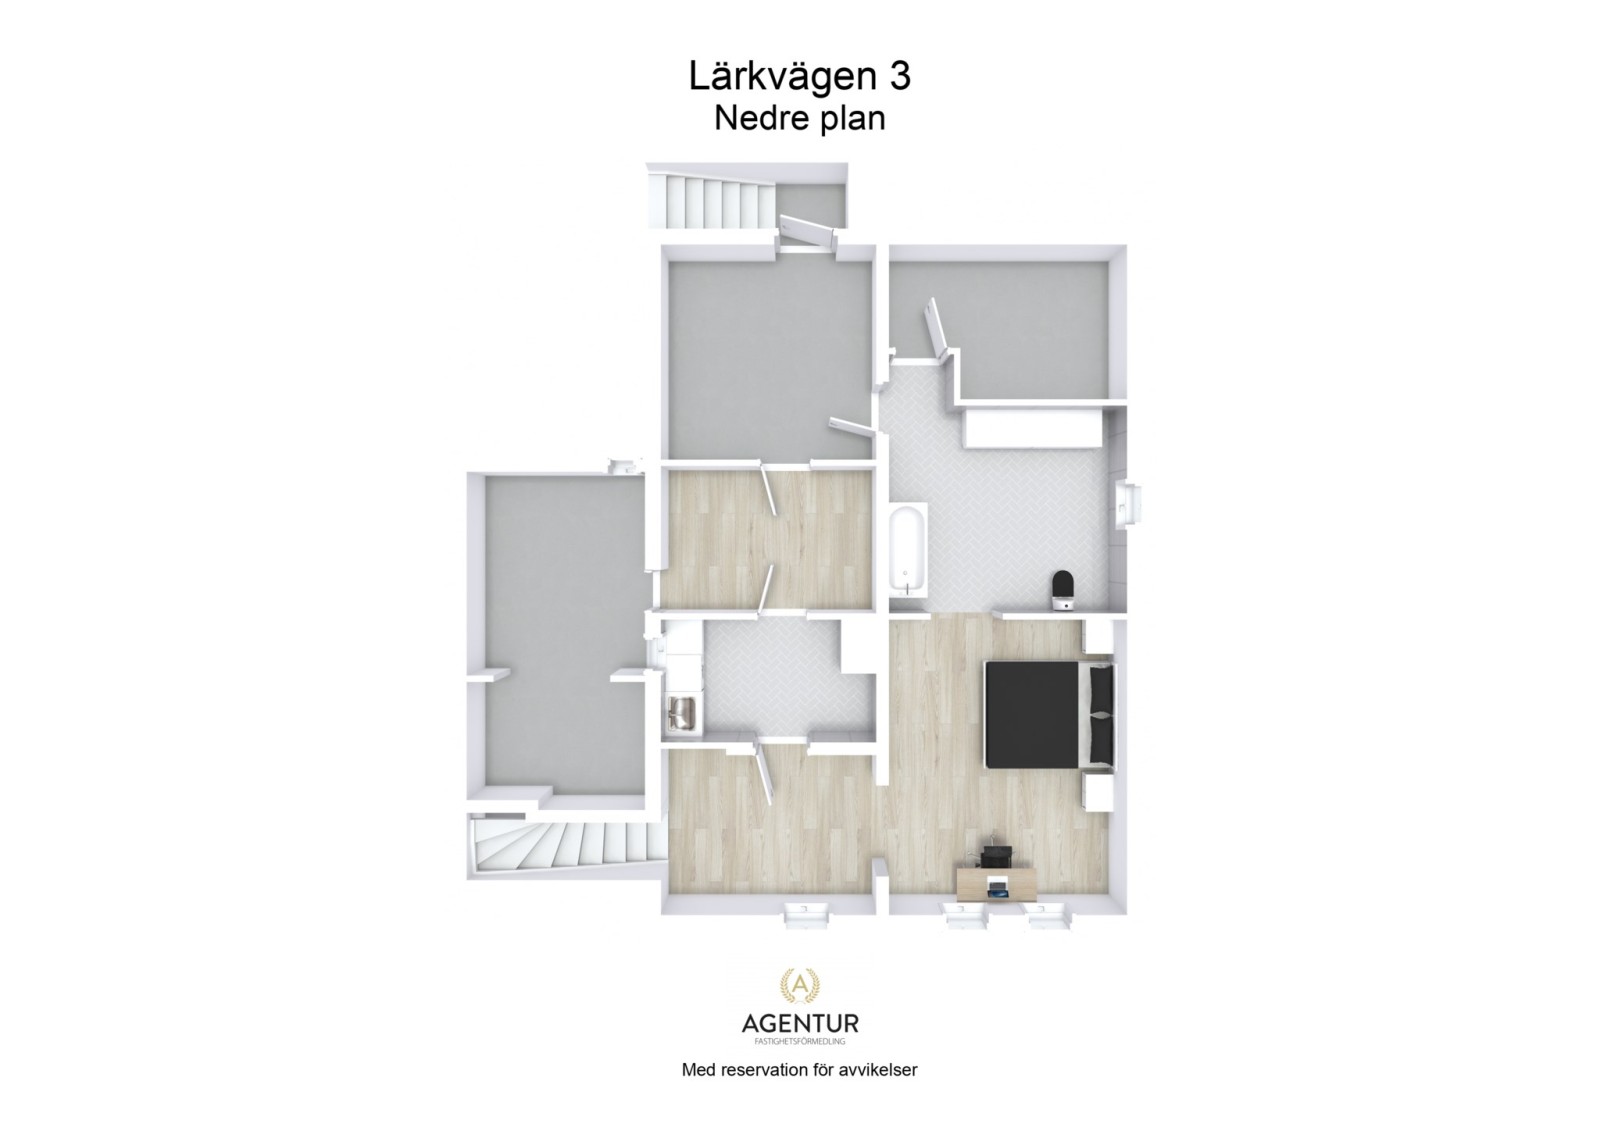 3D Floor Plan - Nedre plan - Letterhead Lärkvägen 3